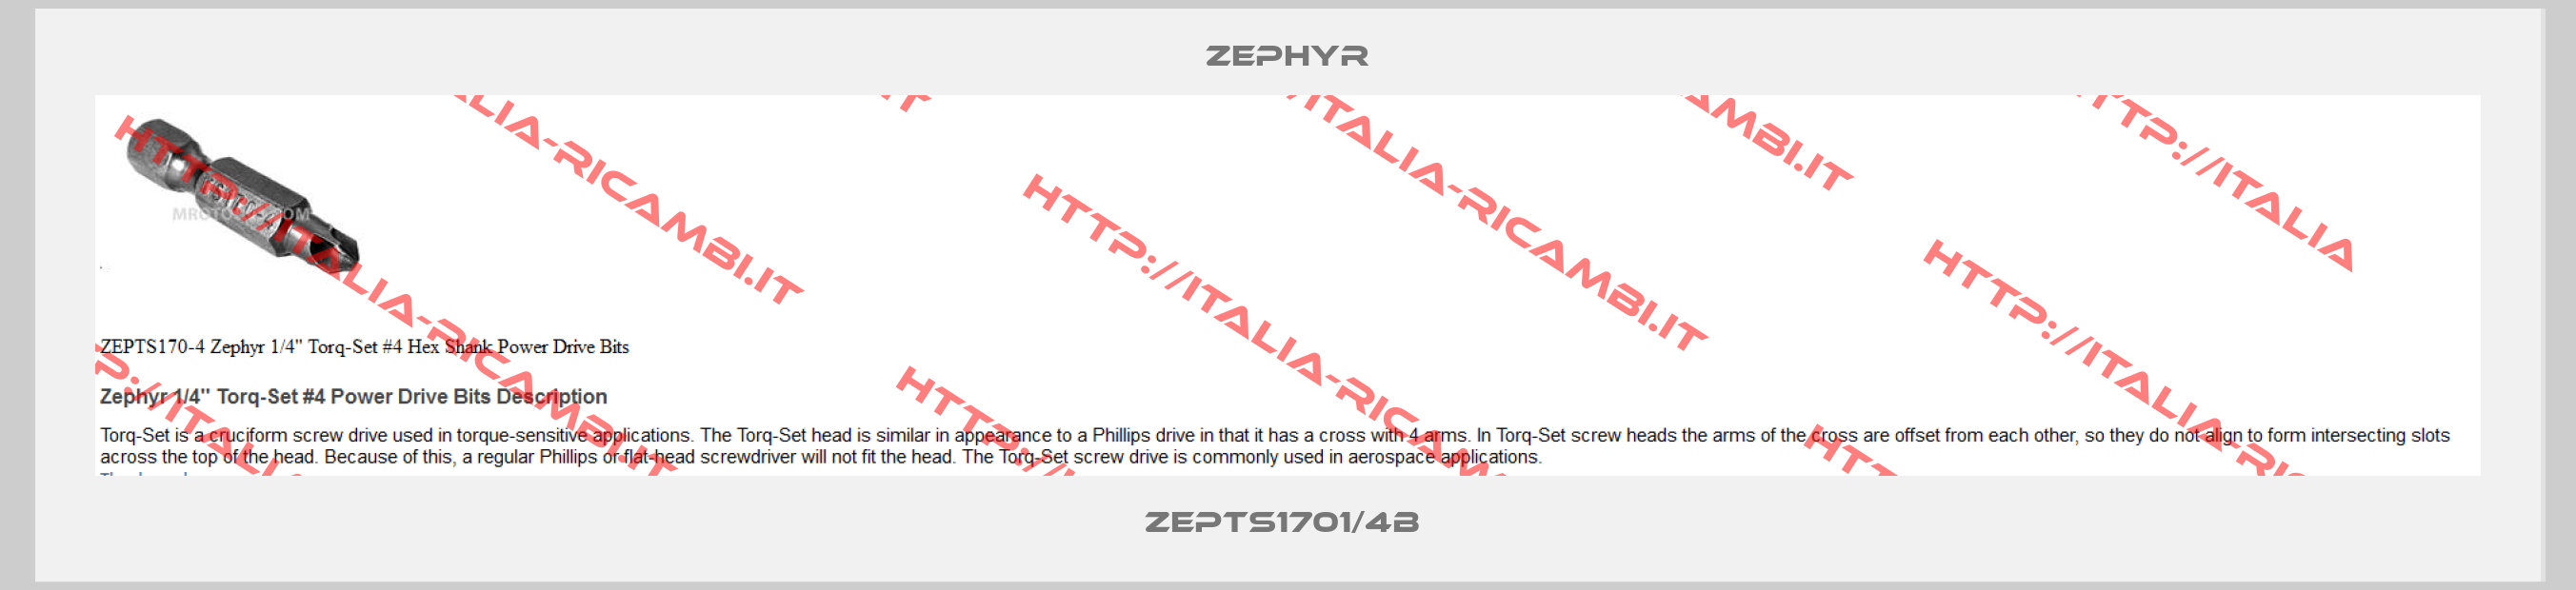 Zephyr-ZEPTS1701/4B 